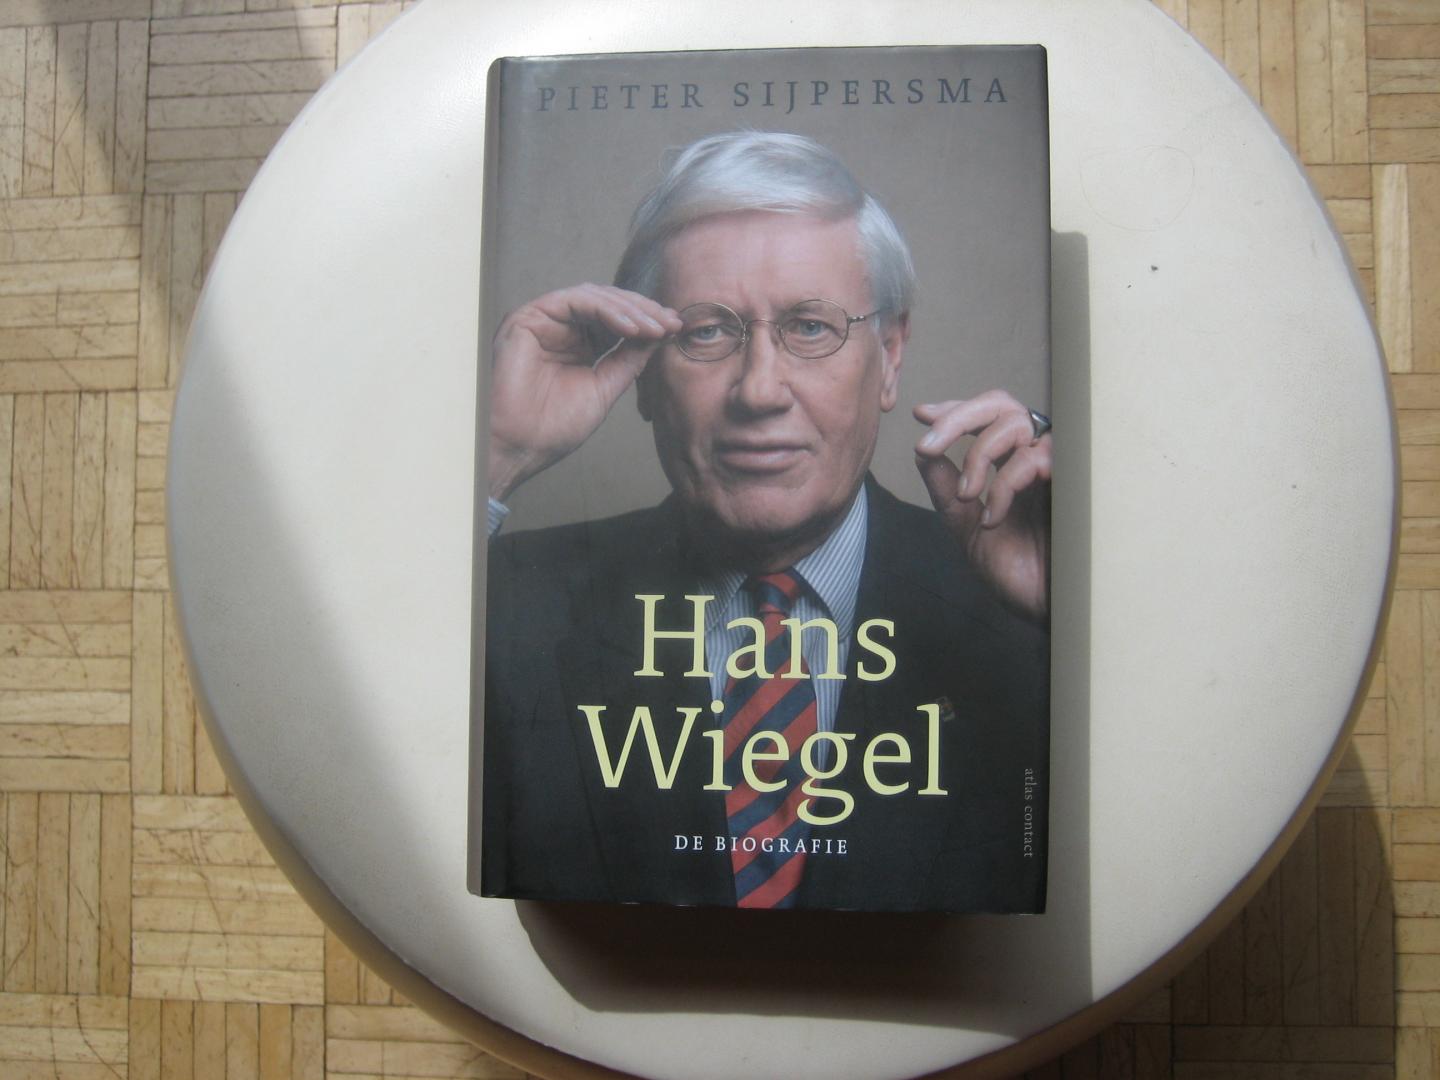 Pieter Sijpersma - Hans Wiegel / De biografie